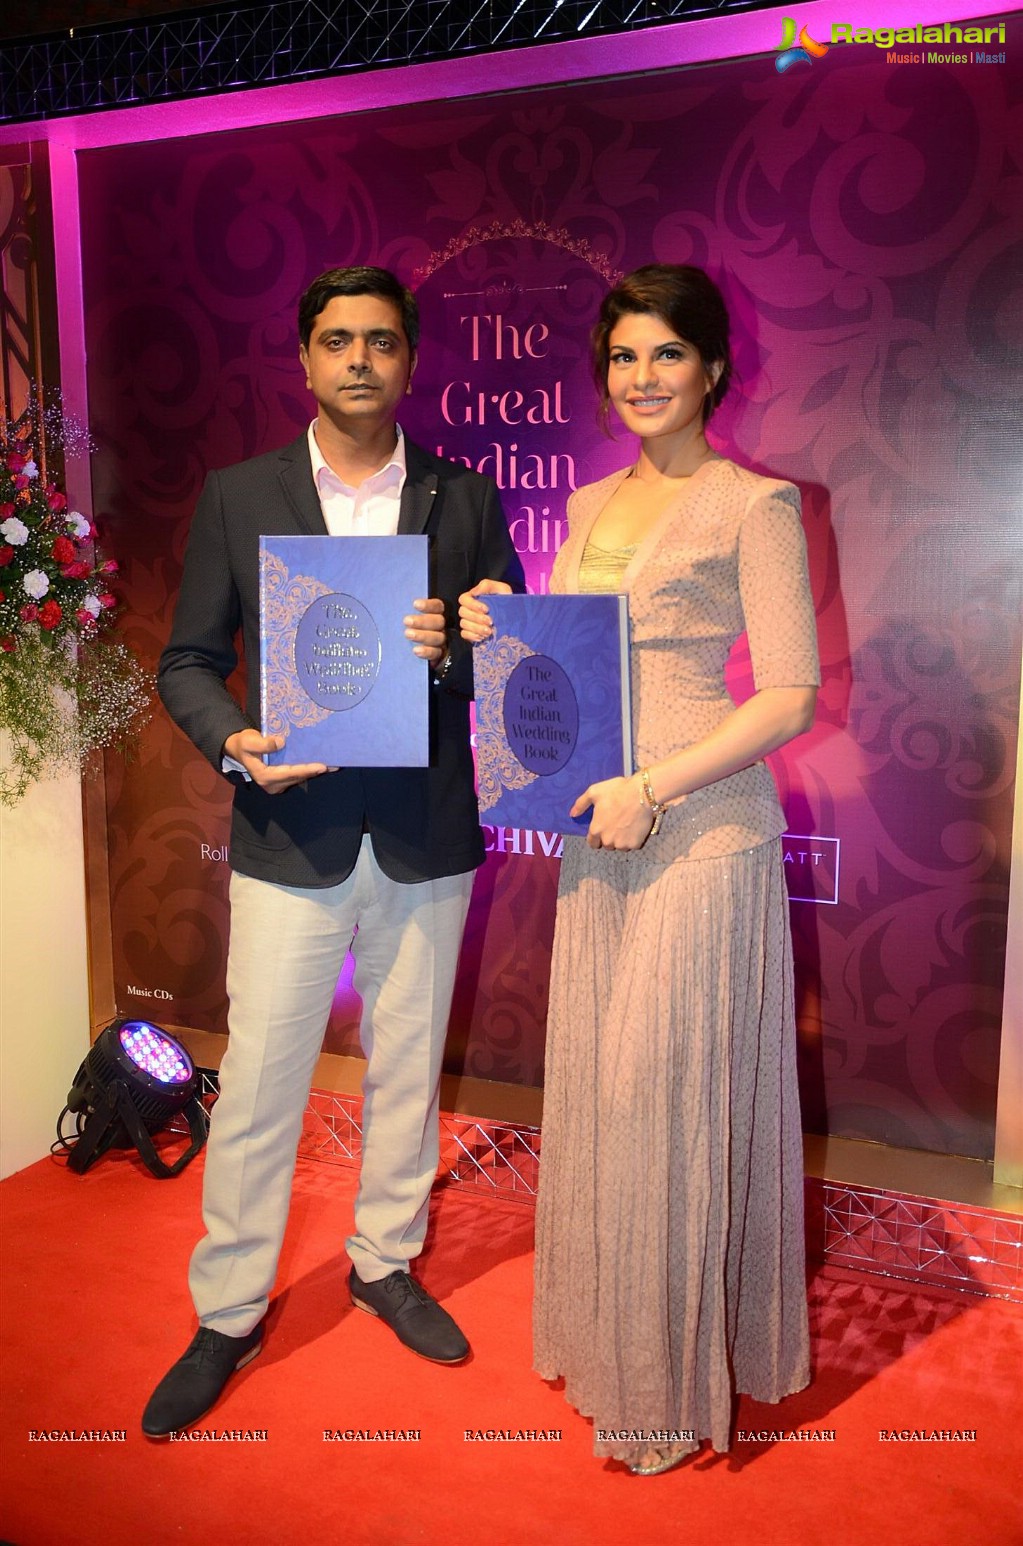 Great Indian Wedding Book Launch, Mumbai